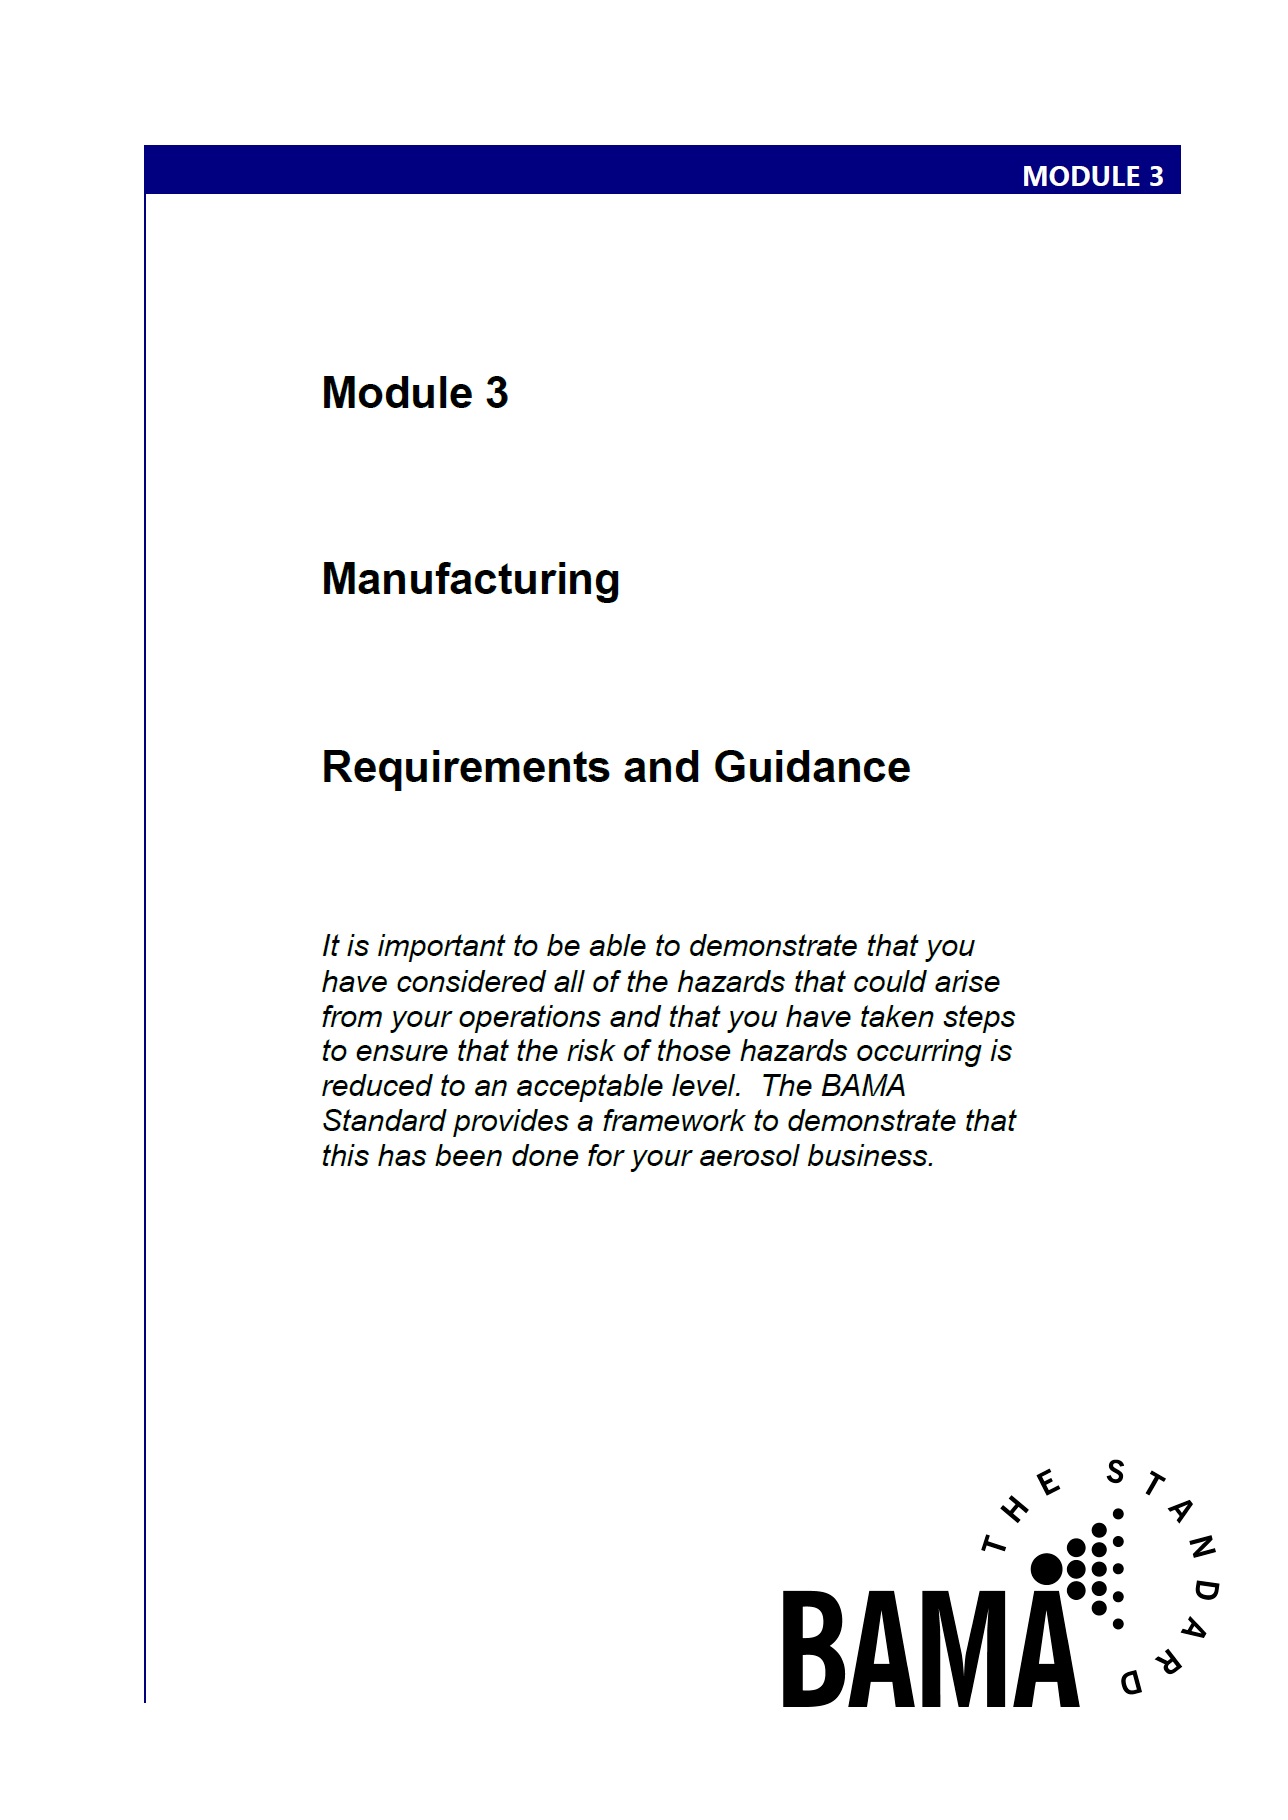 Module 3: Manufacturing